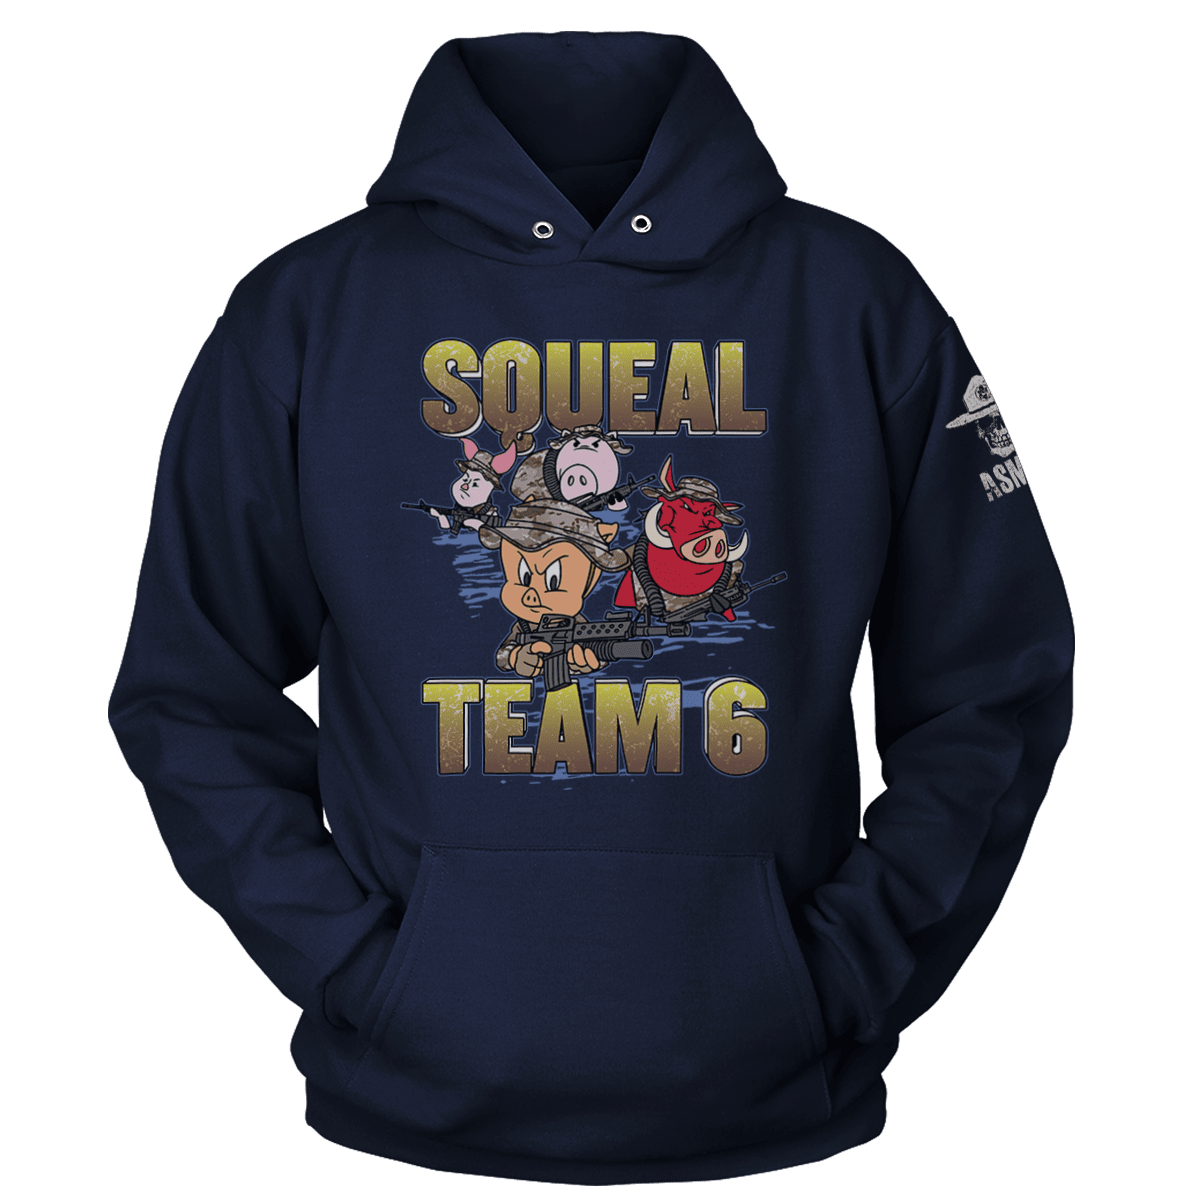 team 6 hoodie